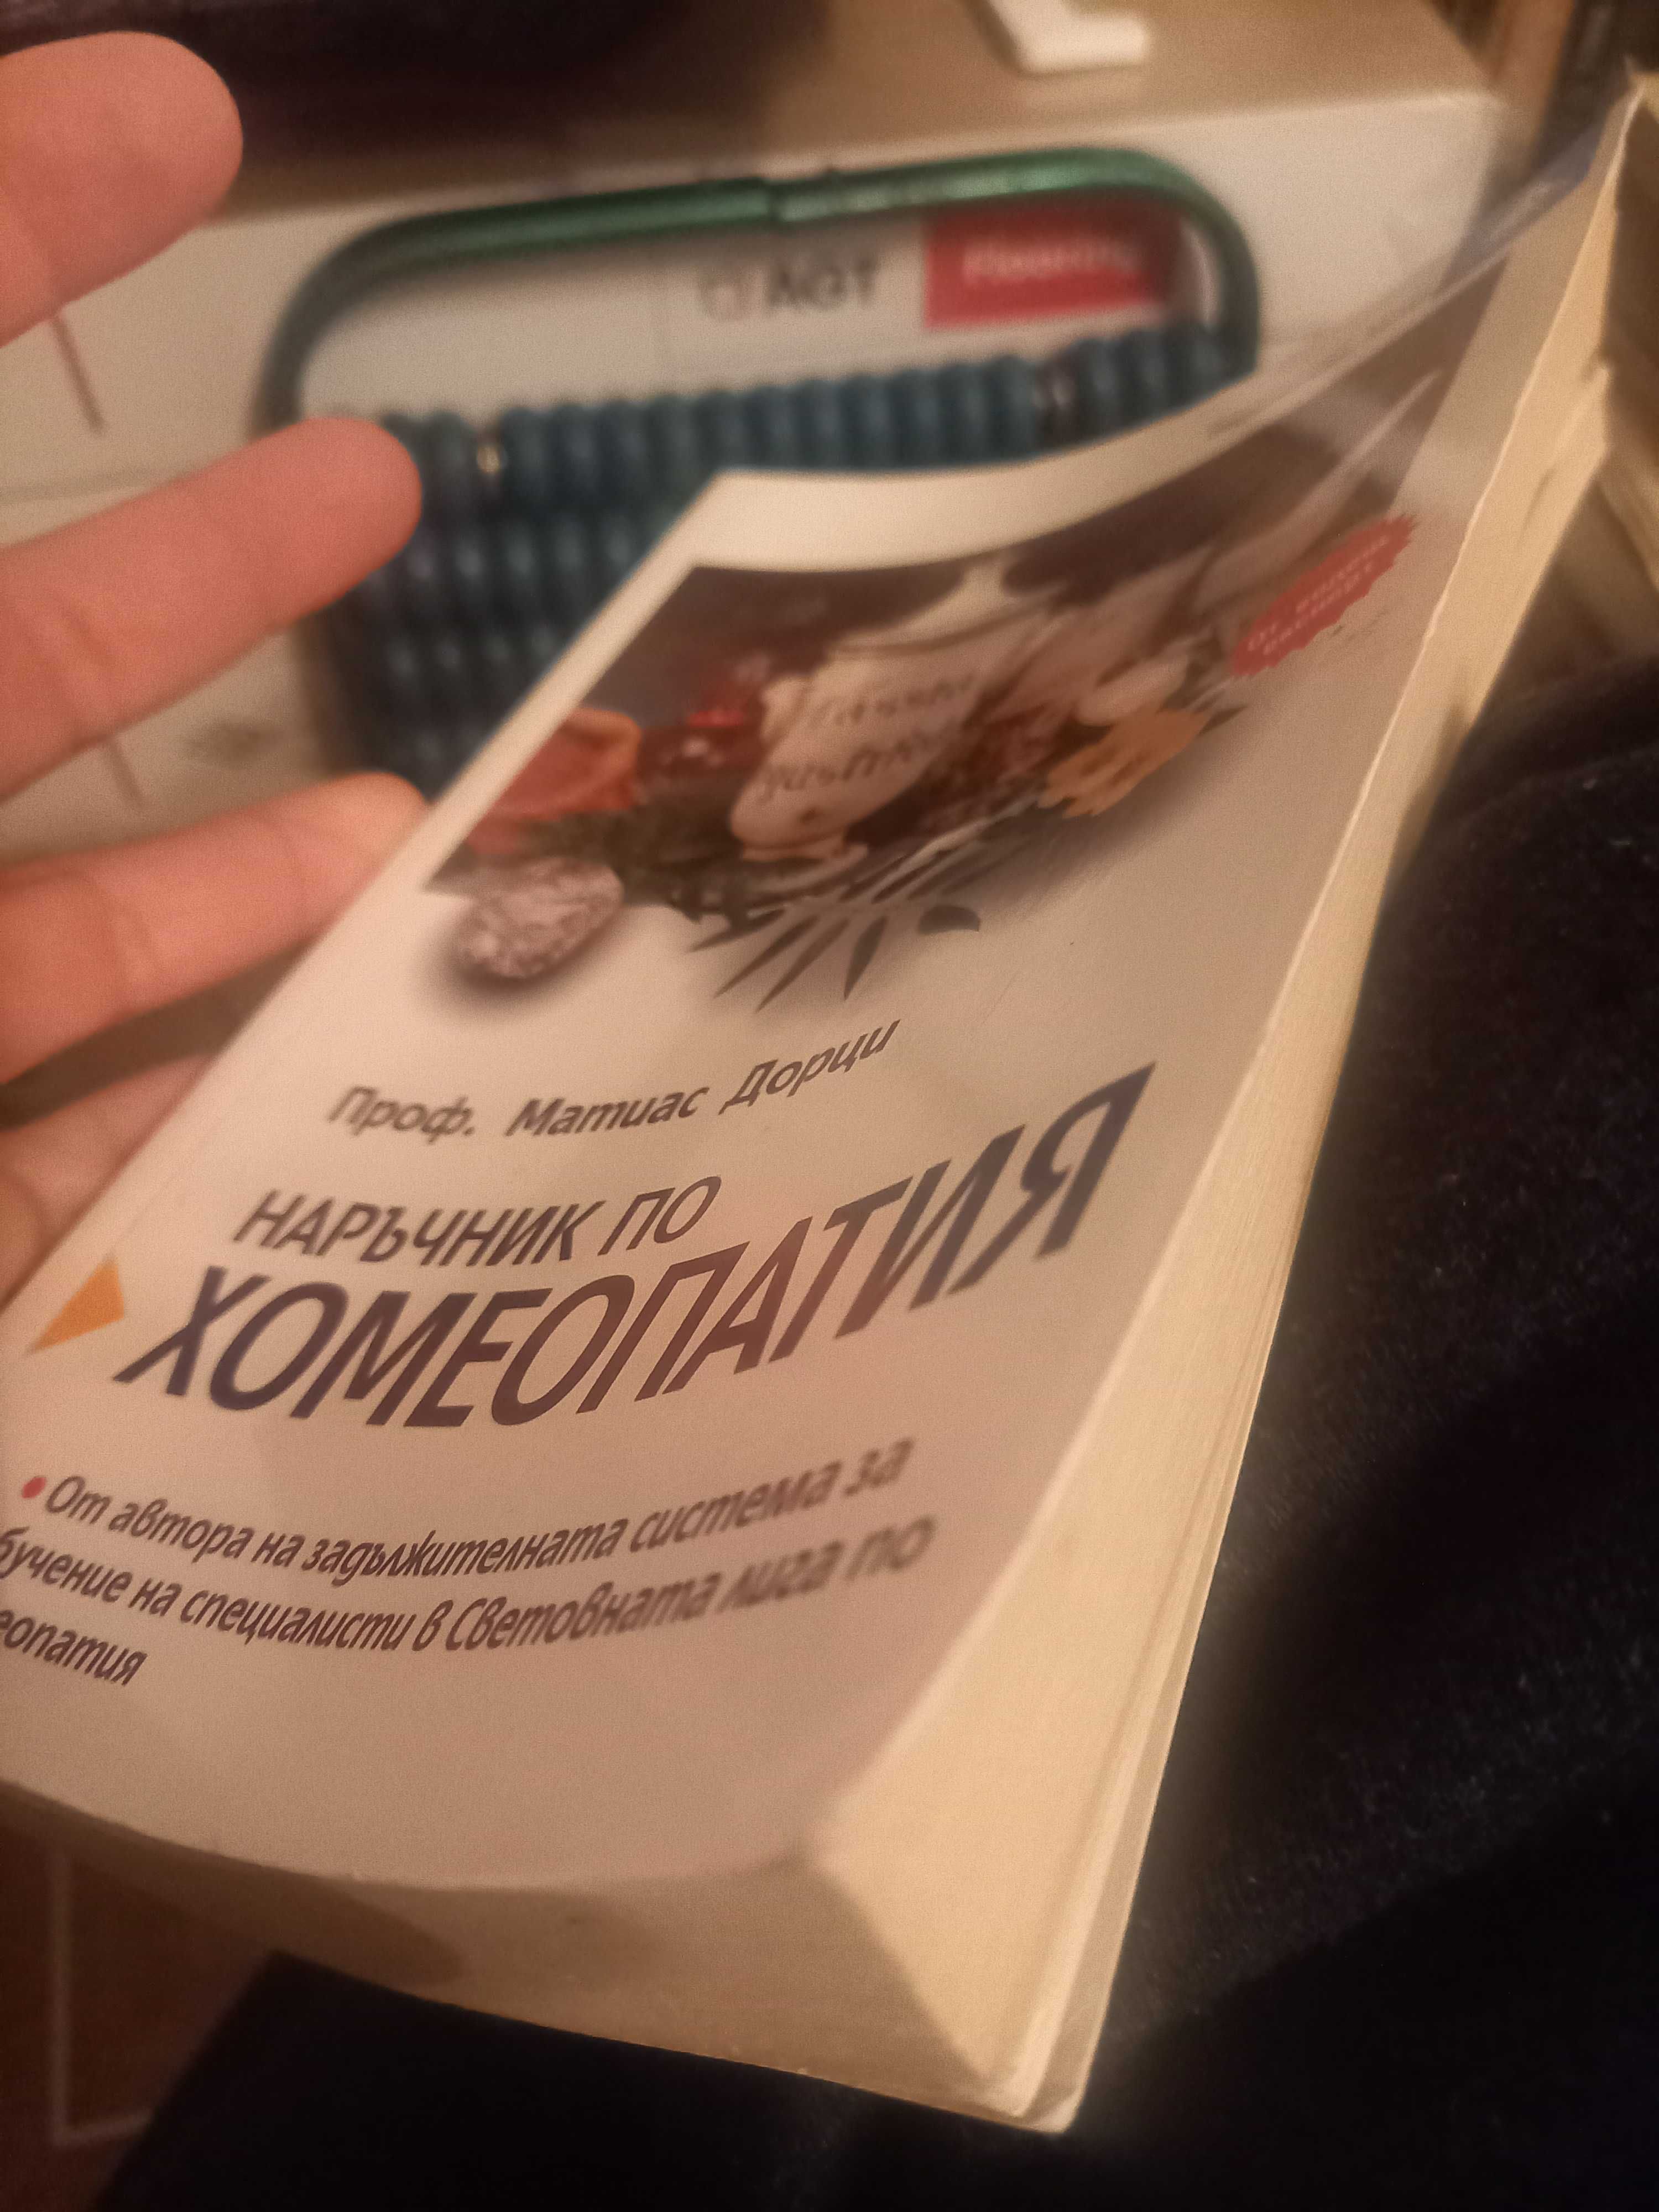 Книга наръчник за хомеопатията